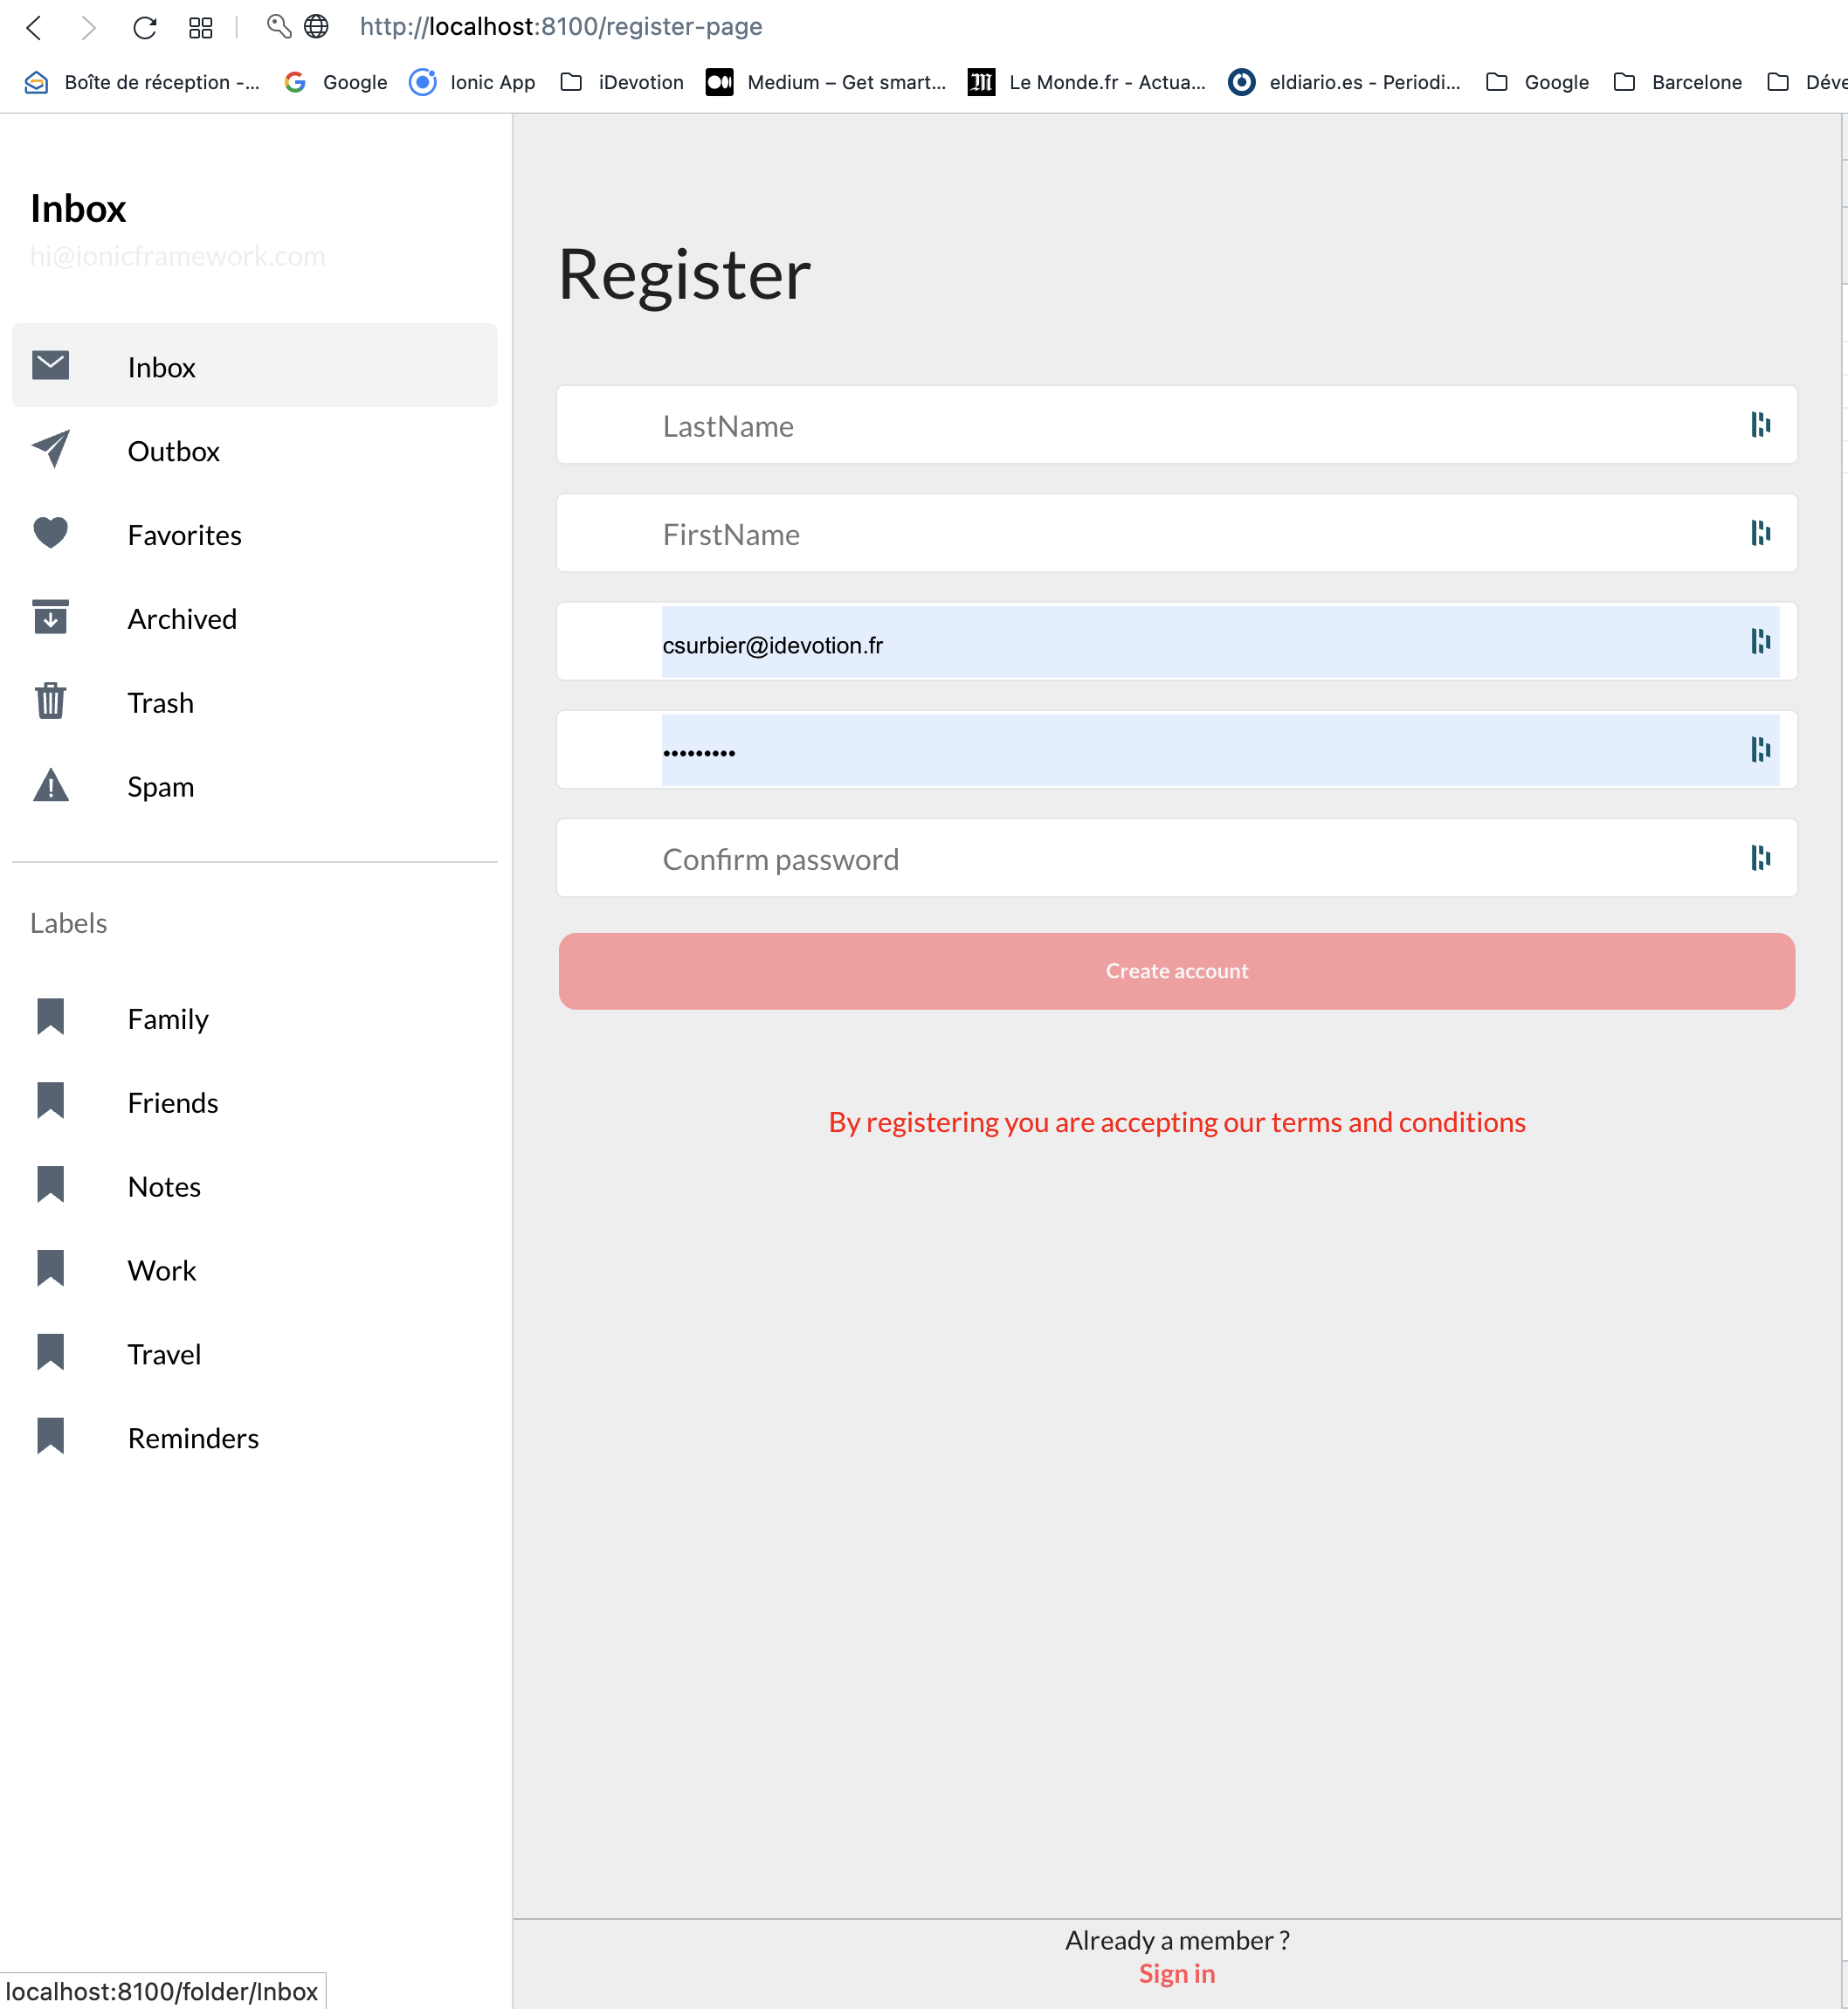 RegisterPage